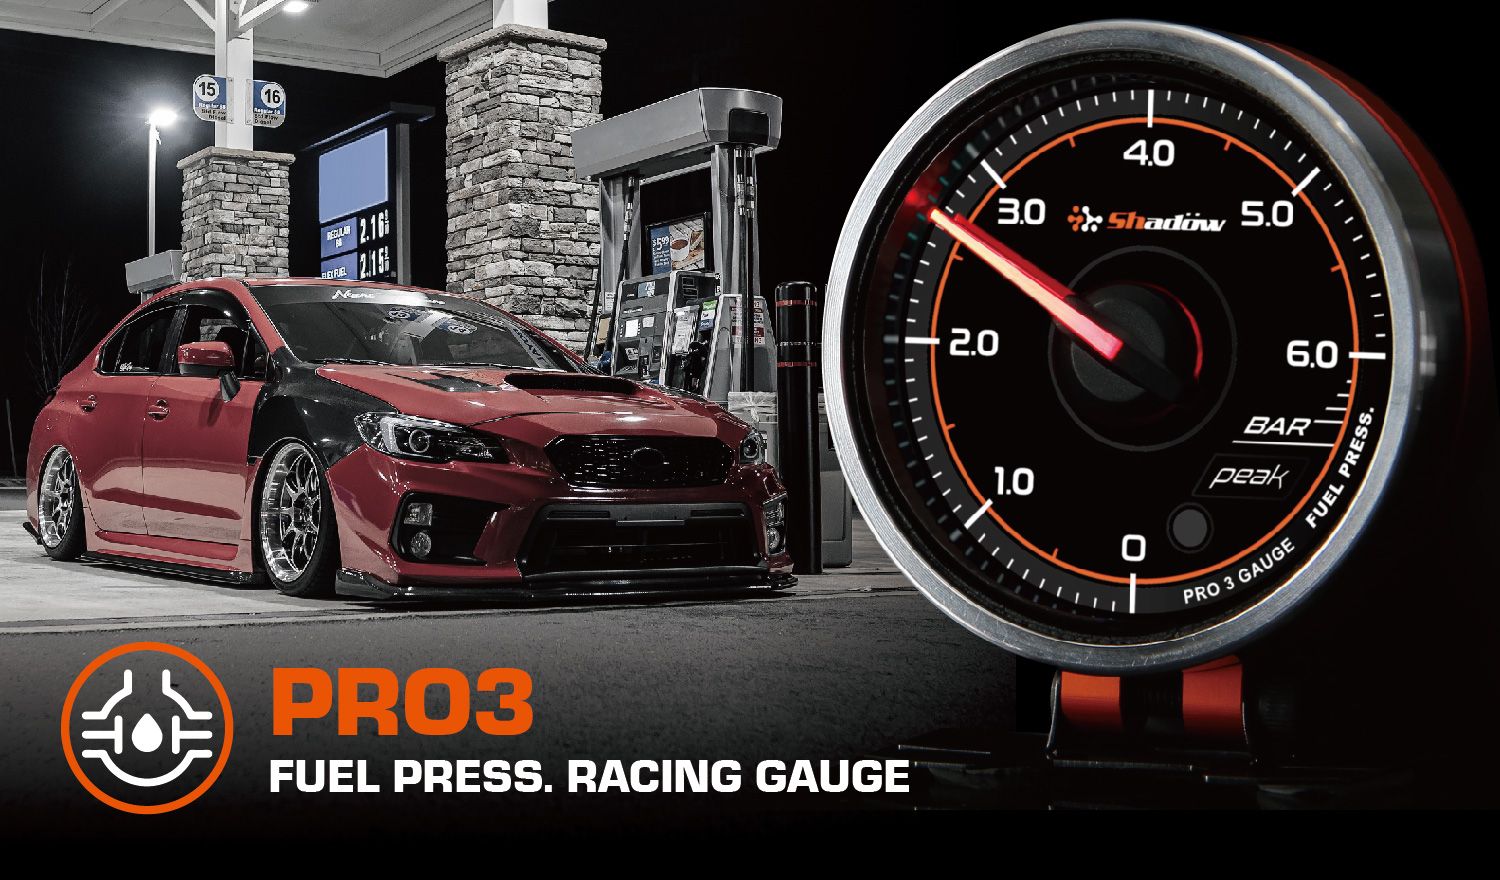 قياس ضغط الوقود بمقياس السباق يتراوح من 0 بار إلى 6 بار.